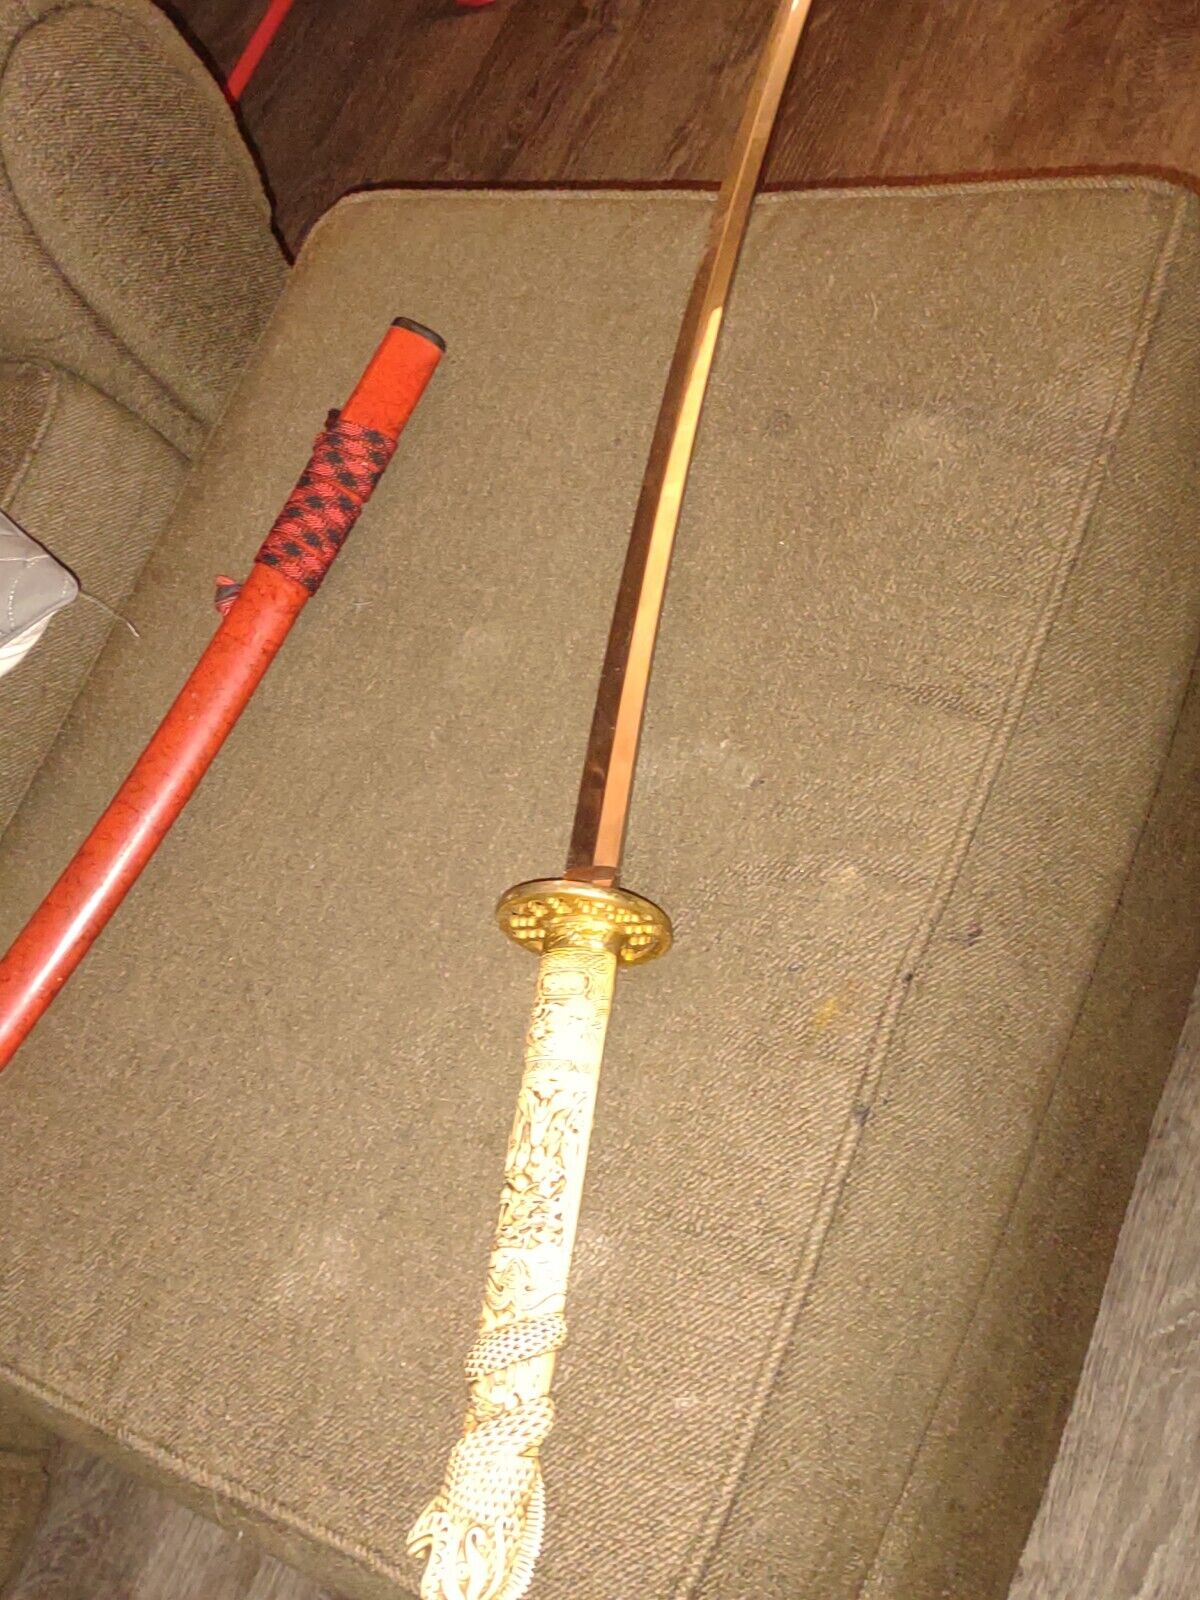 real katana samurai sword sharp color: red dragon handle 